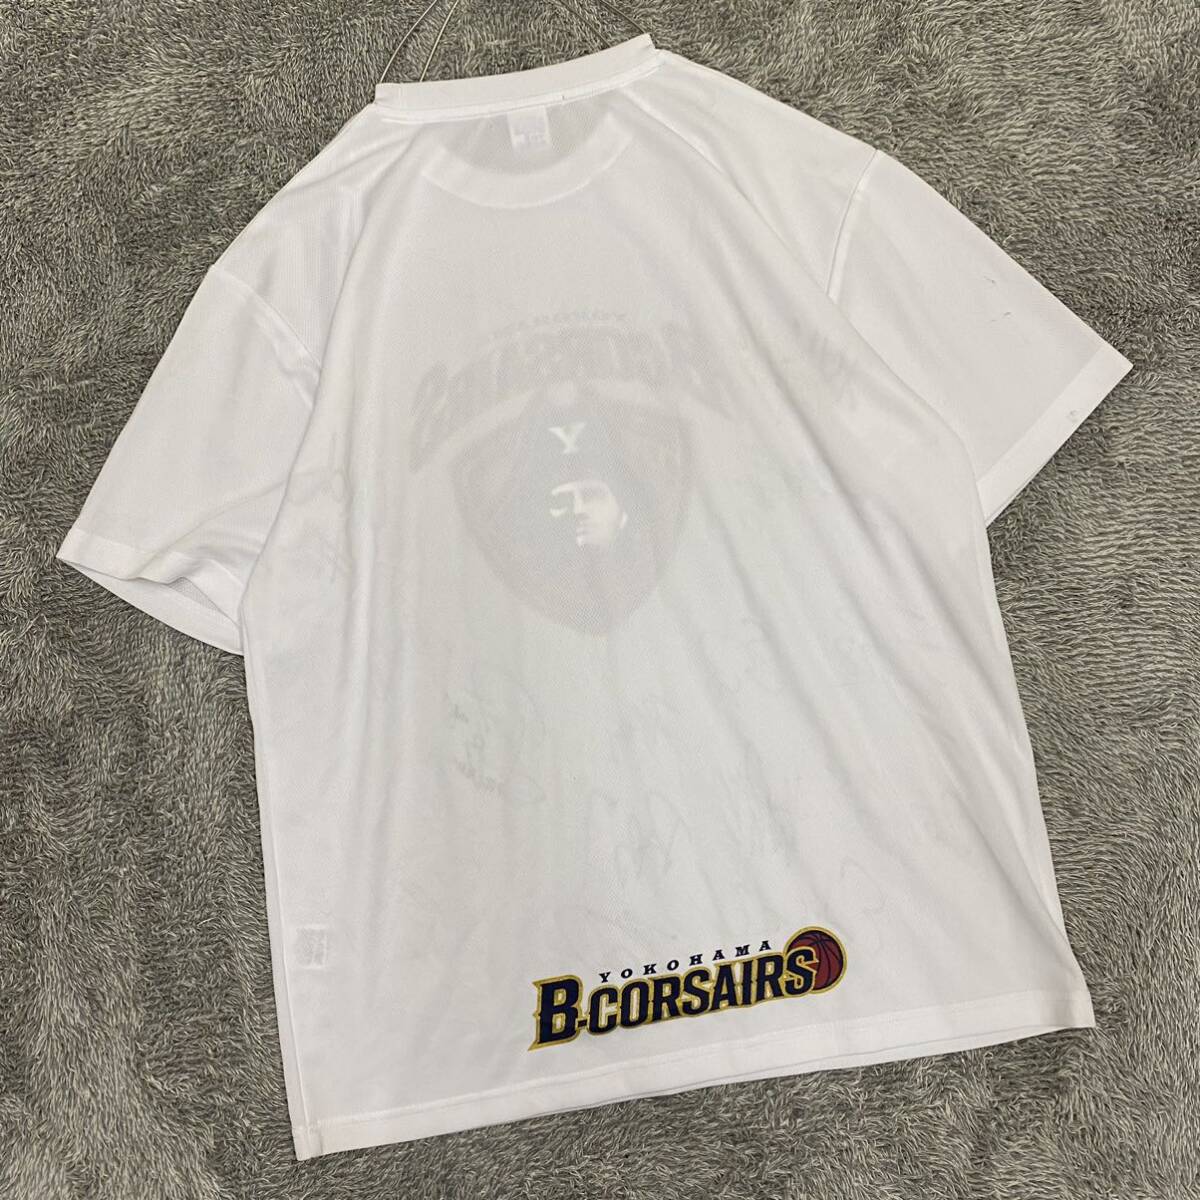 B-CORSAIRS 横浜ビーコルセアーズ Tシャツ 半袖カットソー 選手サイン入り 直筆 サイズXXL ホワイト 白 メンズ トップス 最落なし （U19）_画像2